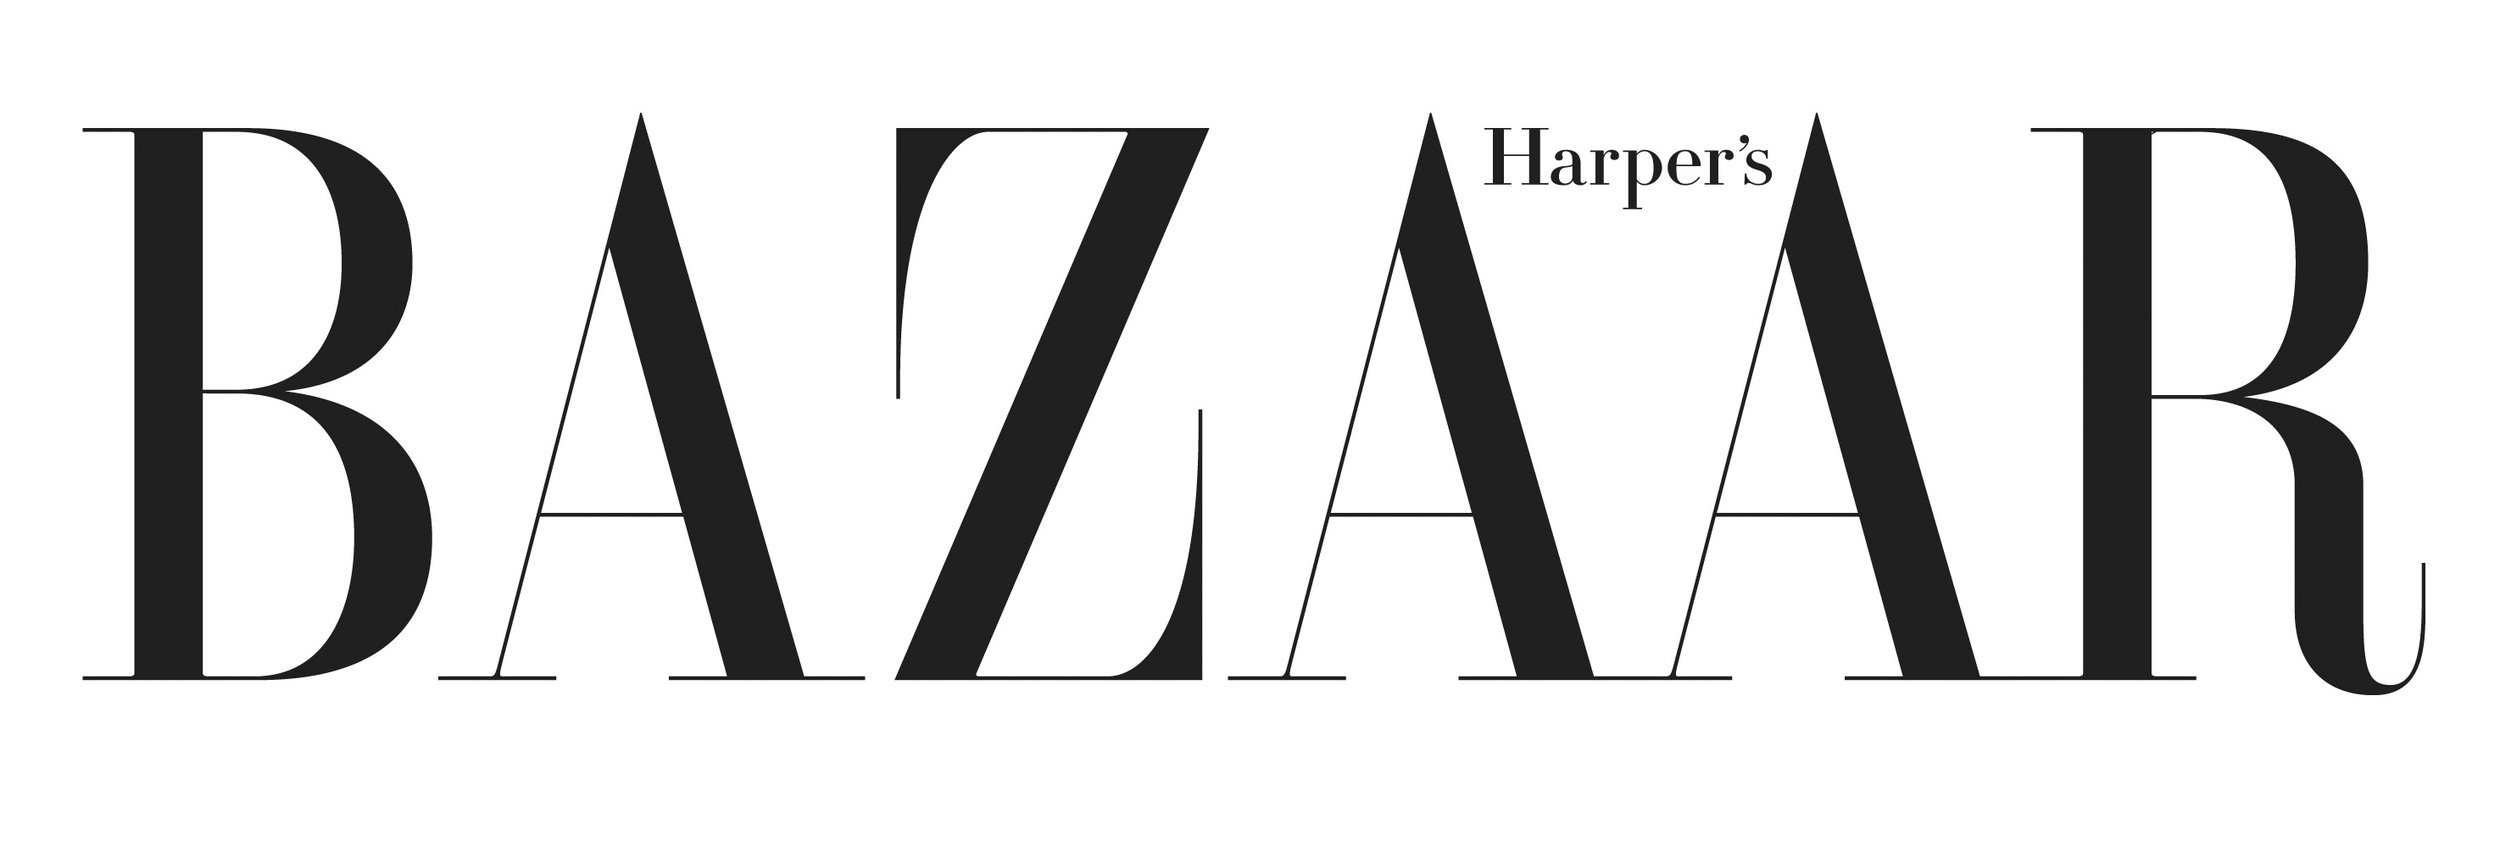 Harpers-Bazaar-logo.jpg